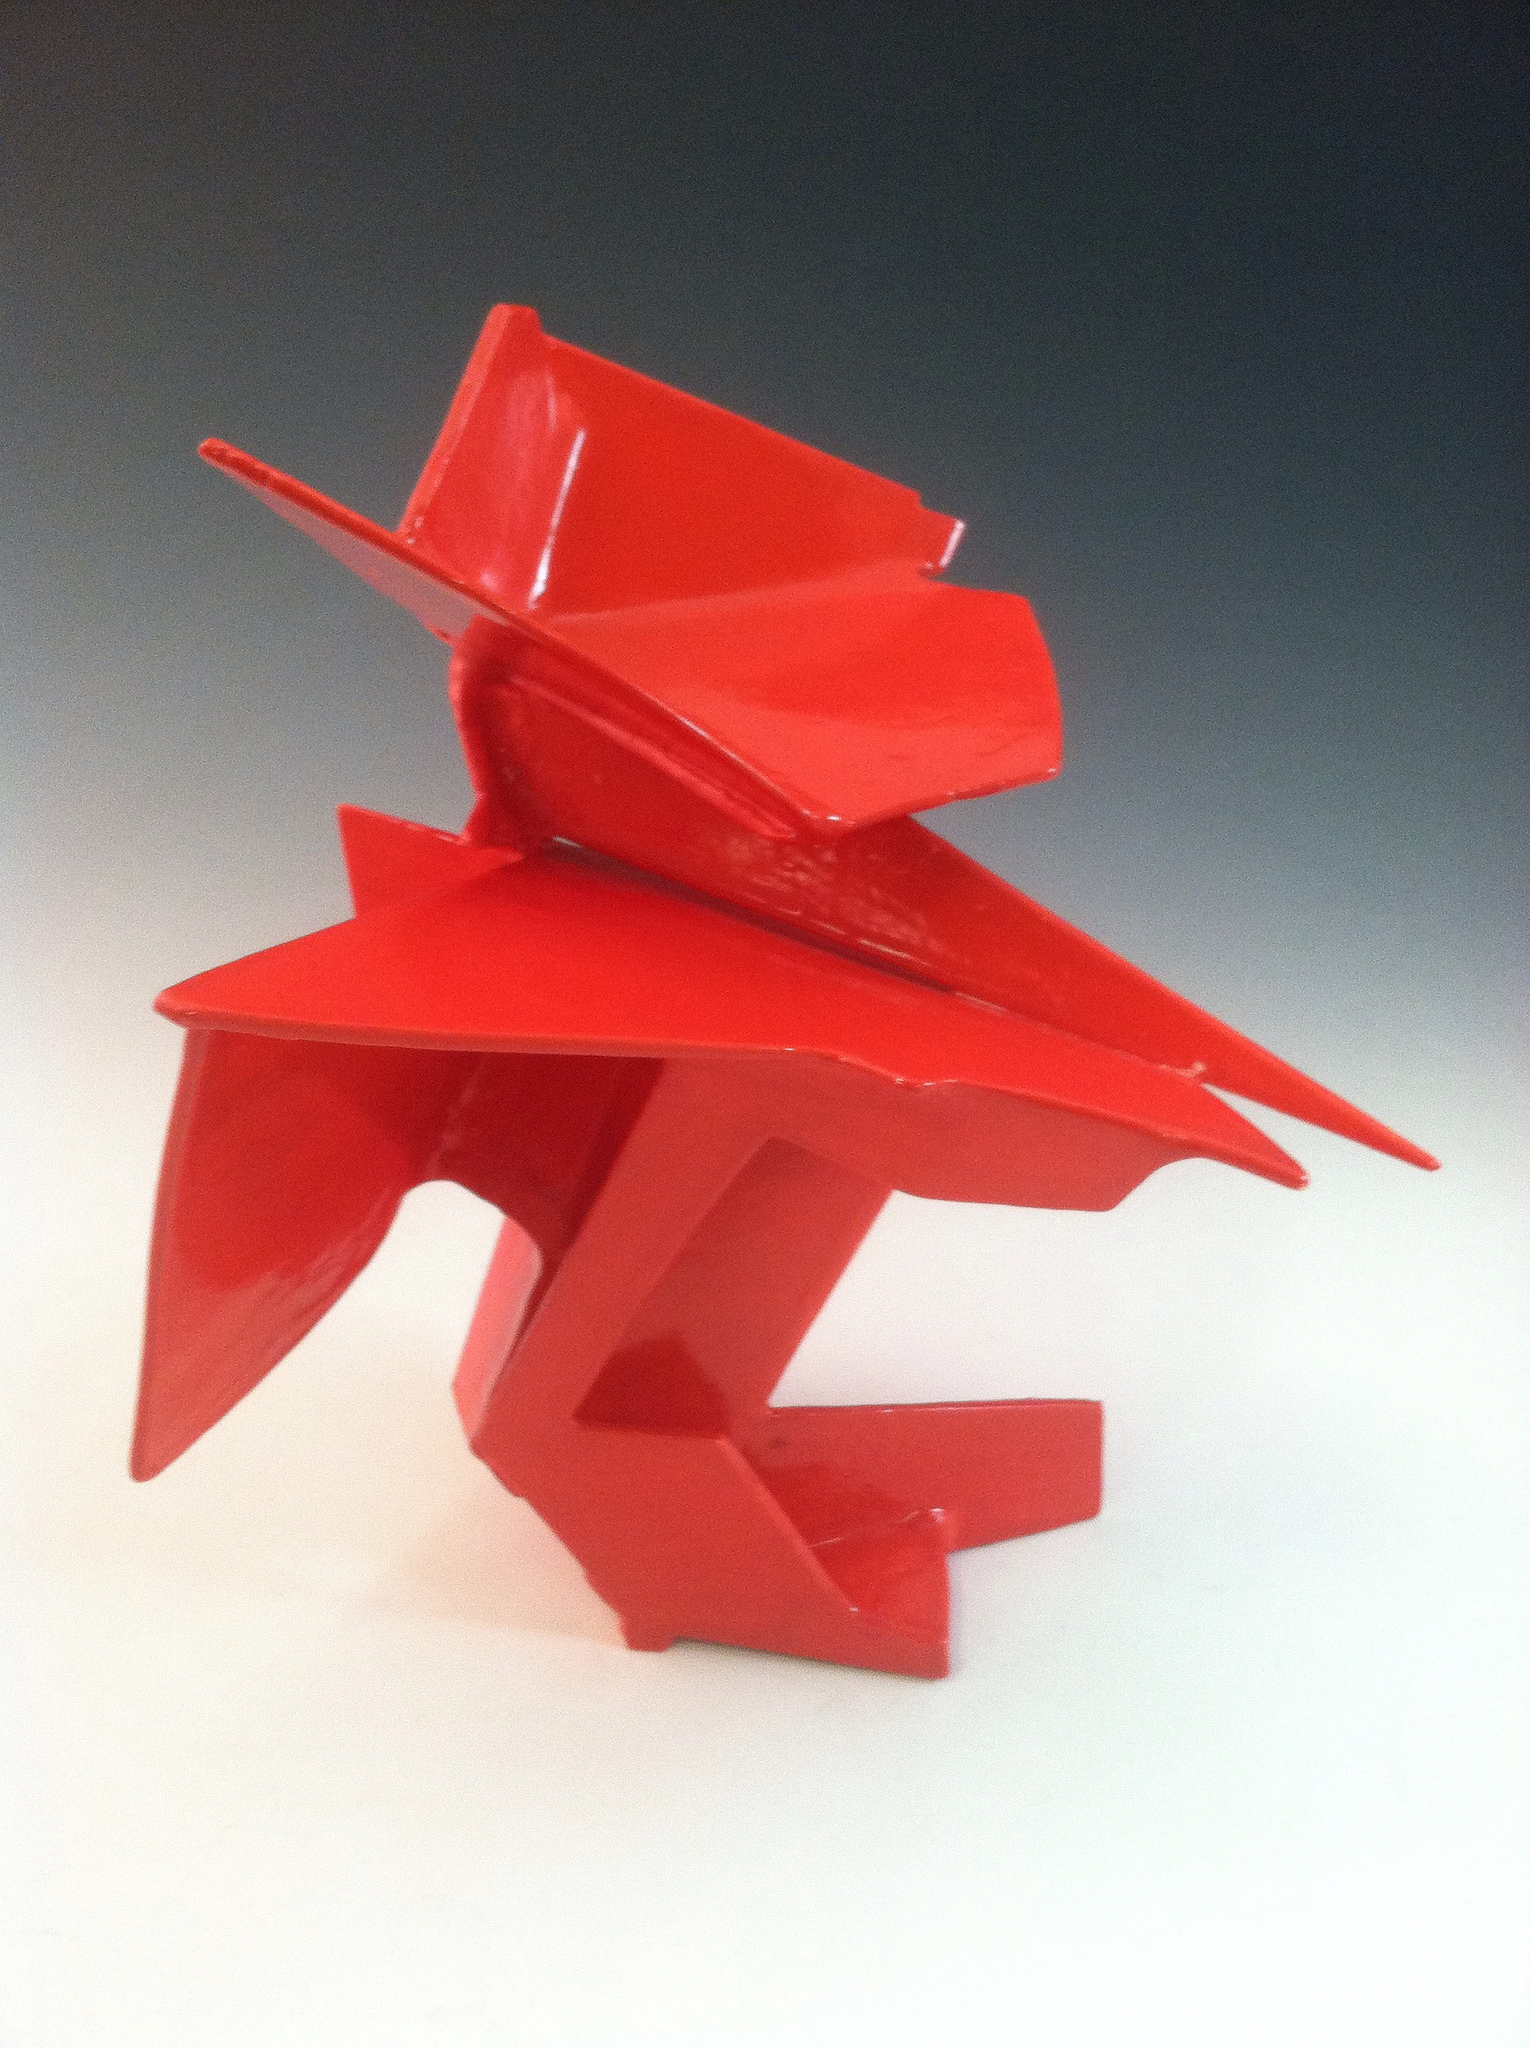 Red geometric sculpture